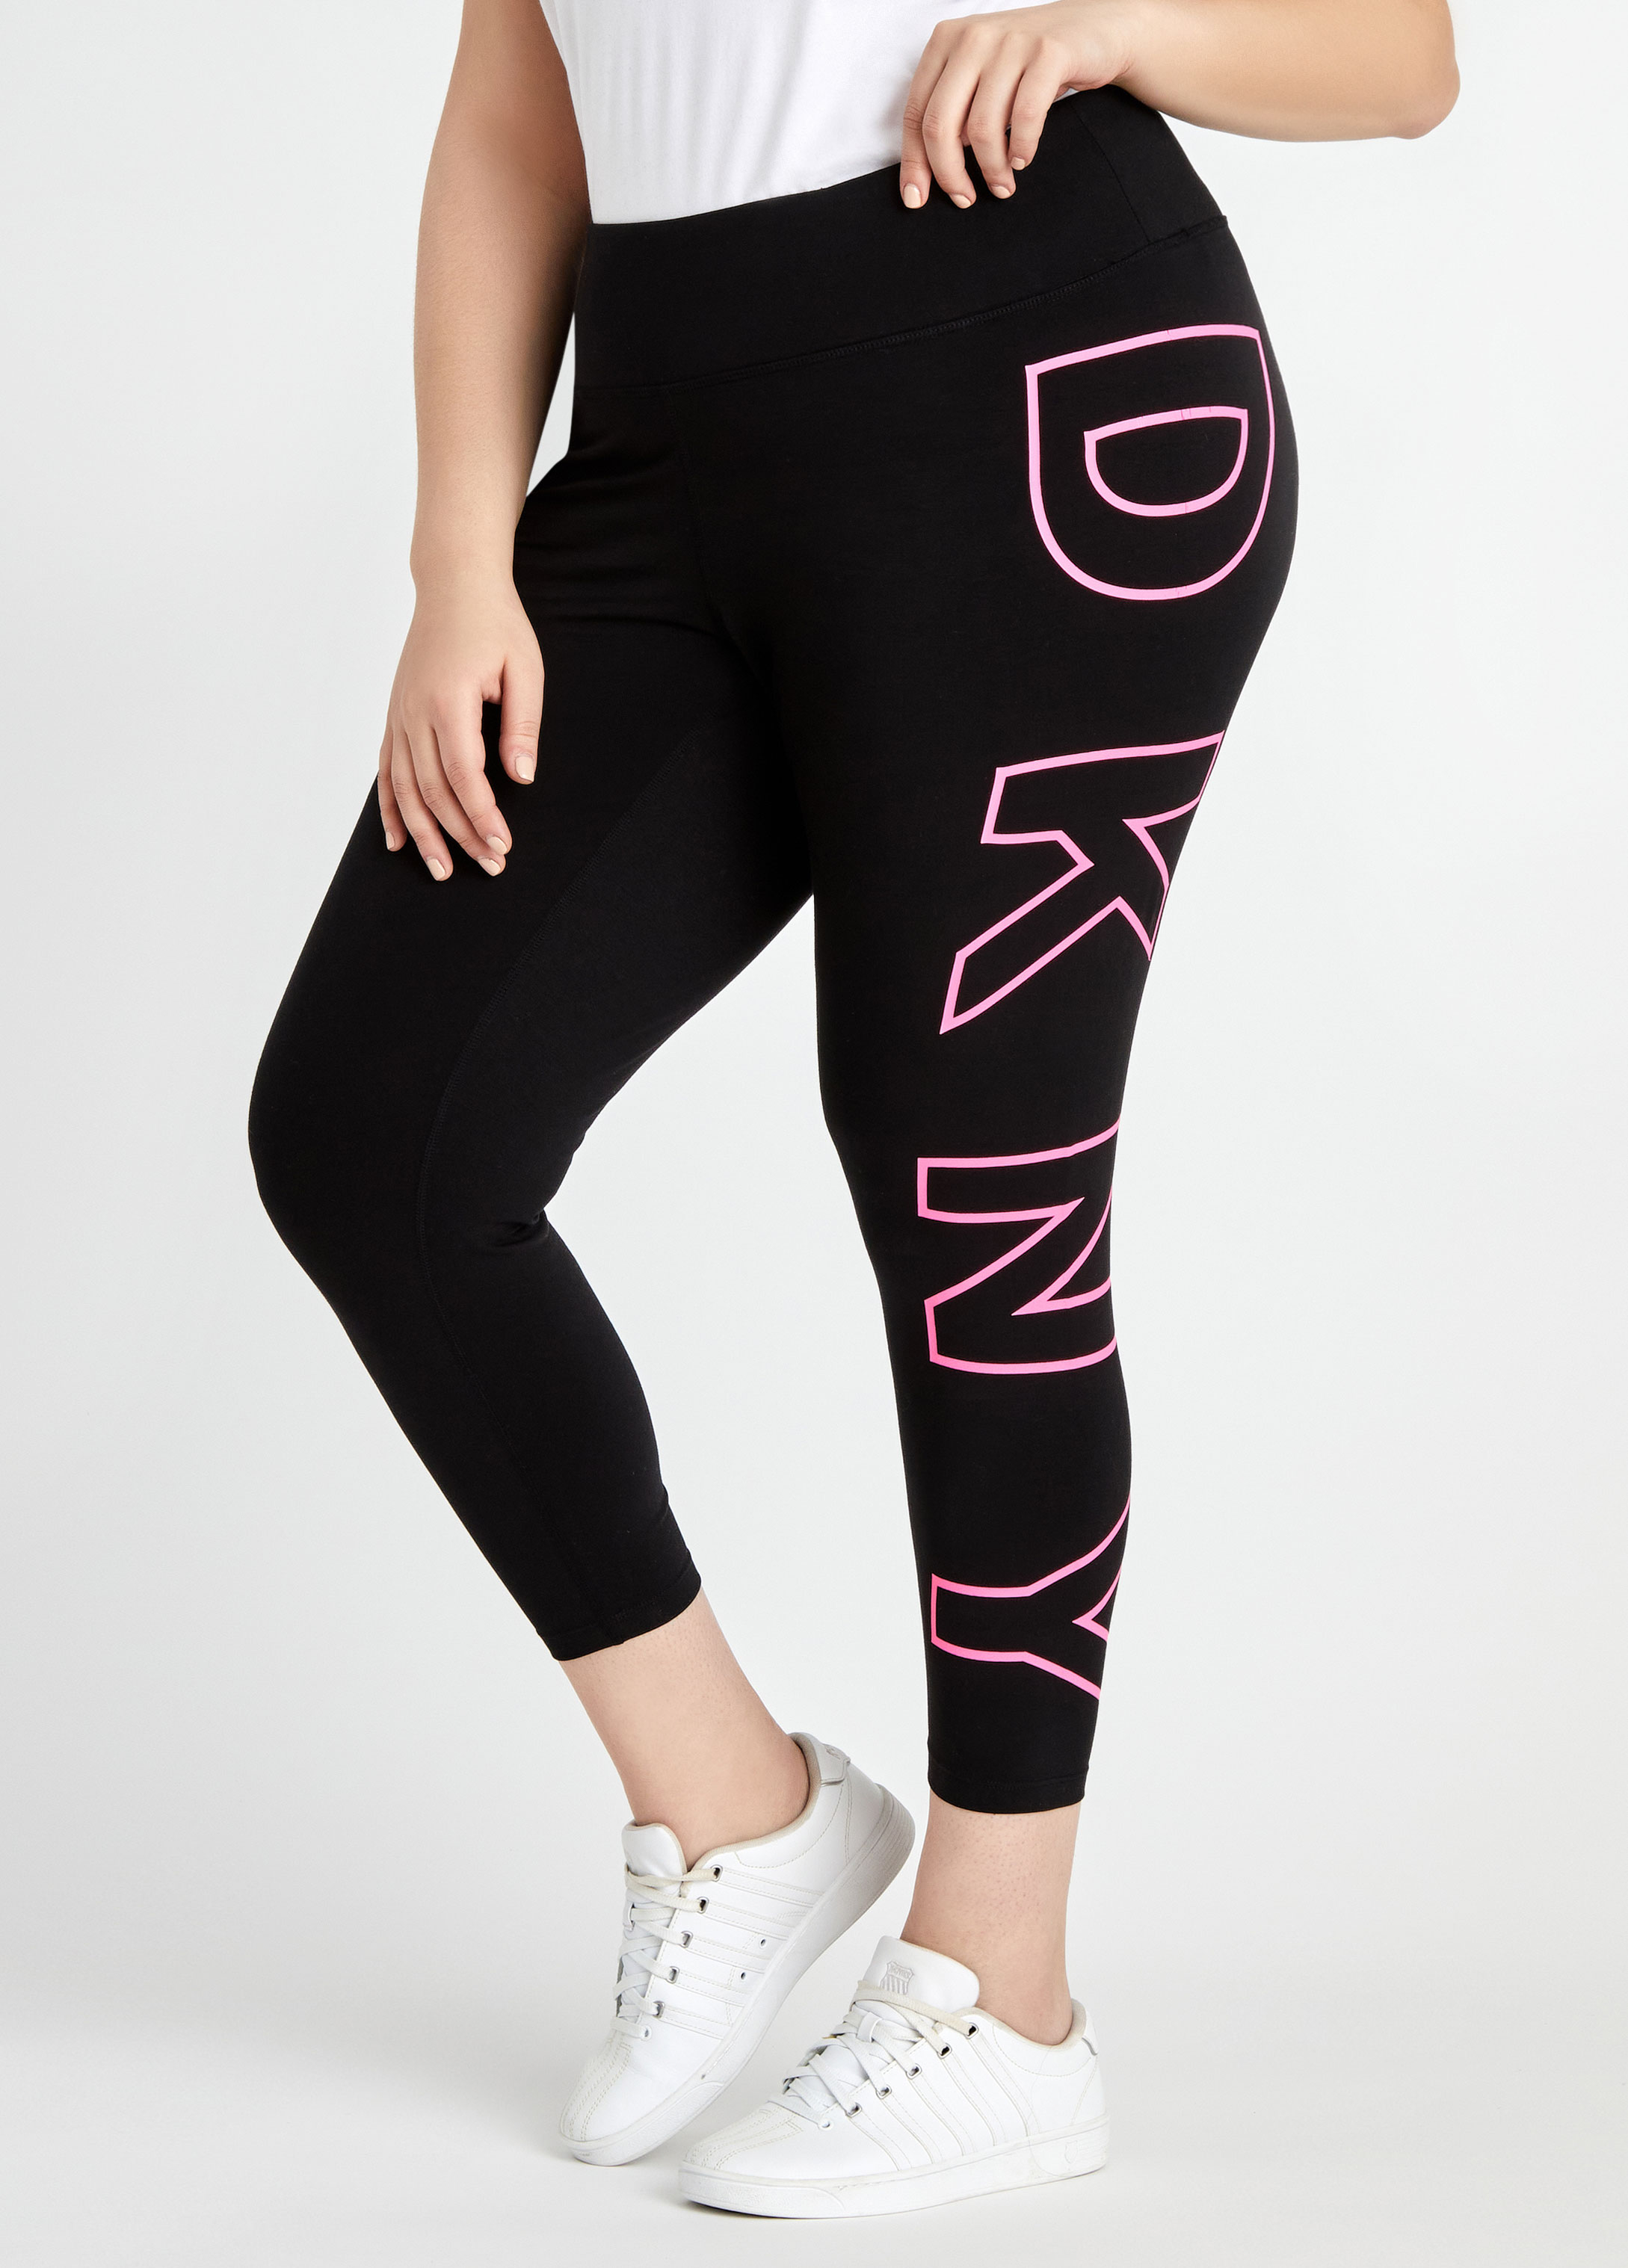 DKNY Women's High Waisted 7/8 Exploded Logo Leggings Black Size 1X